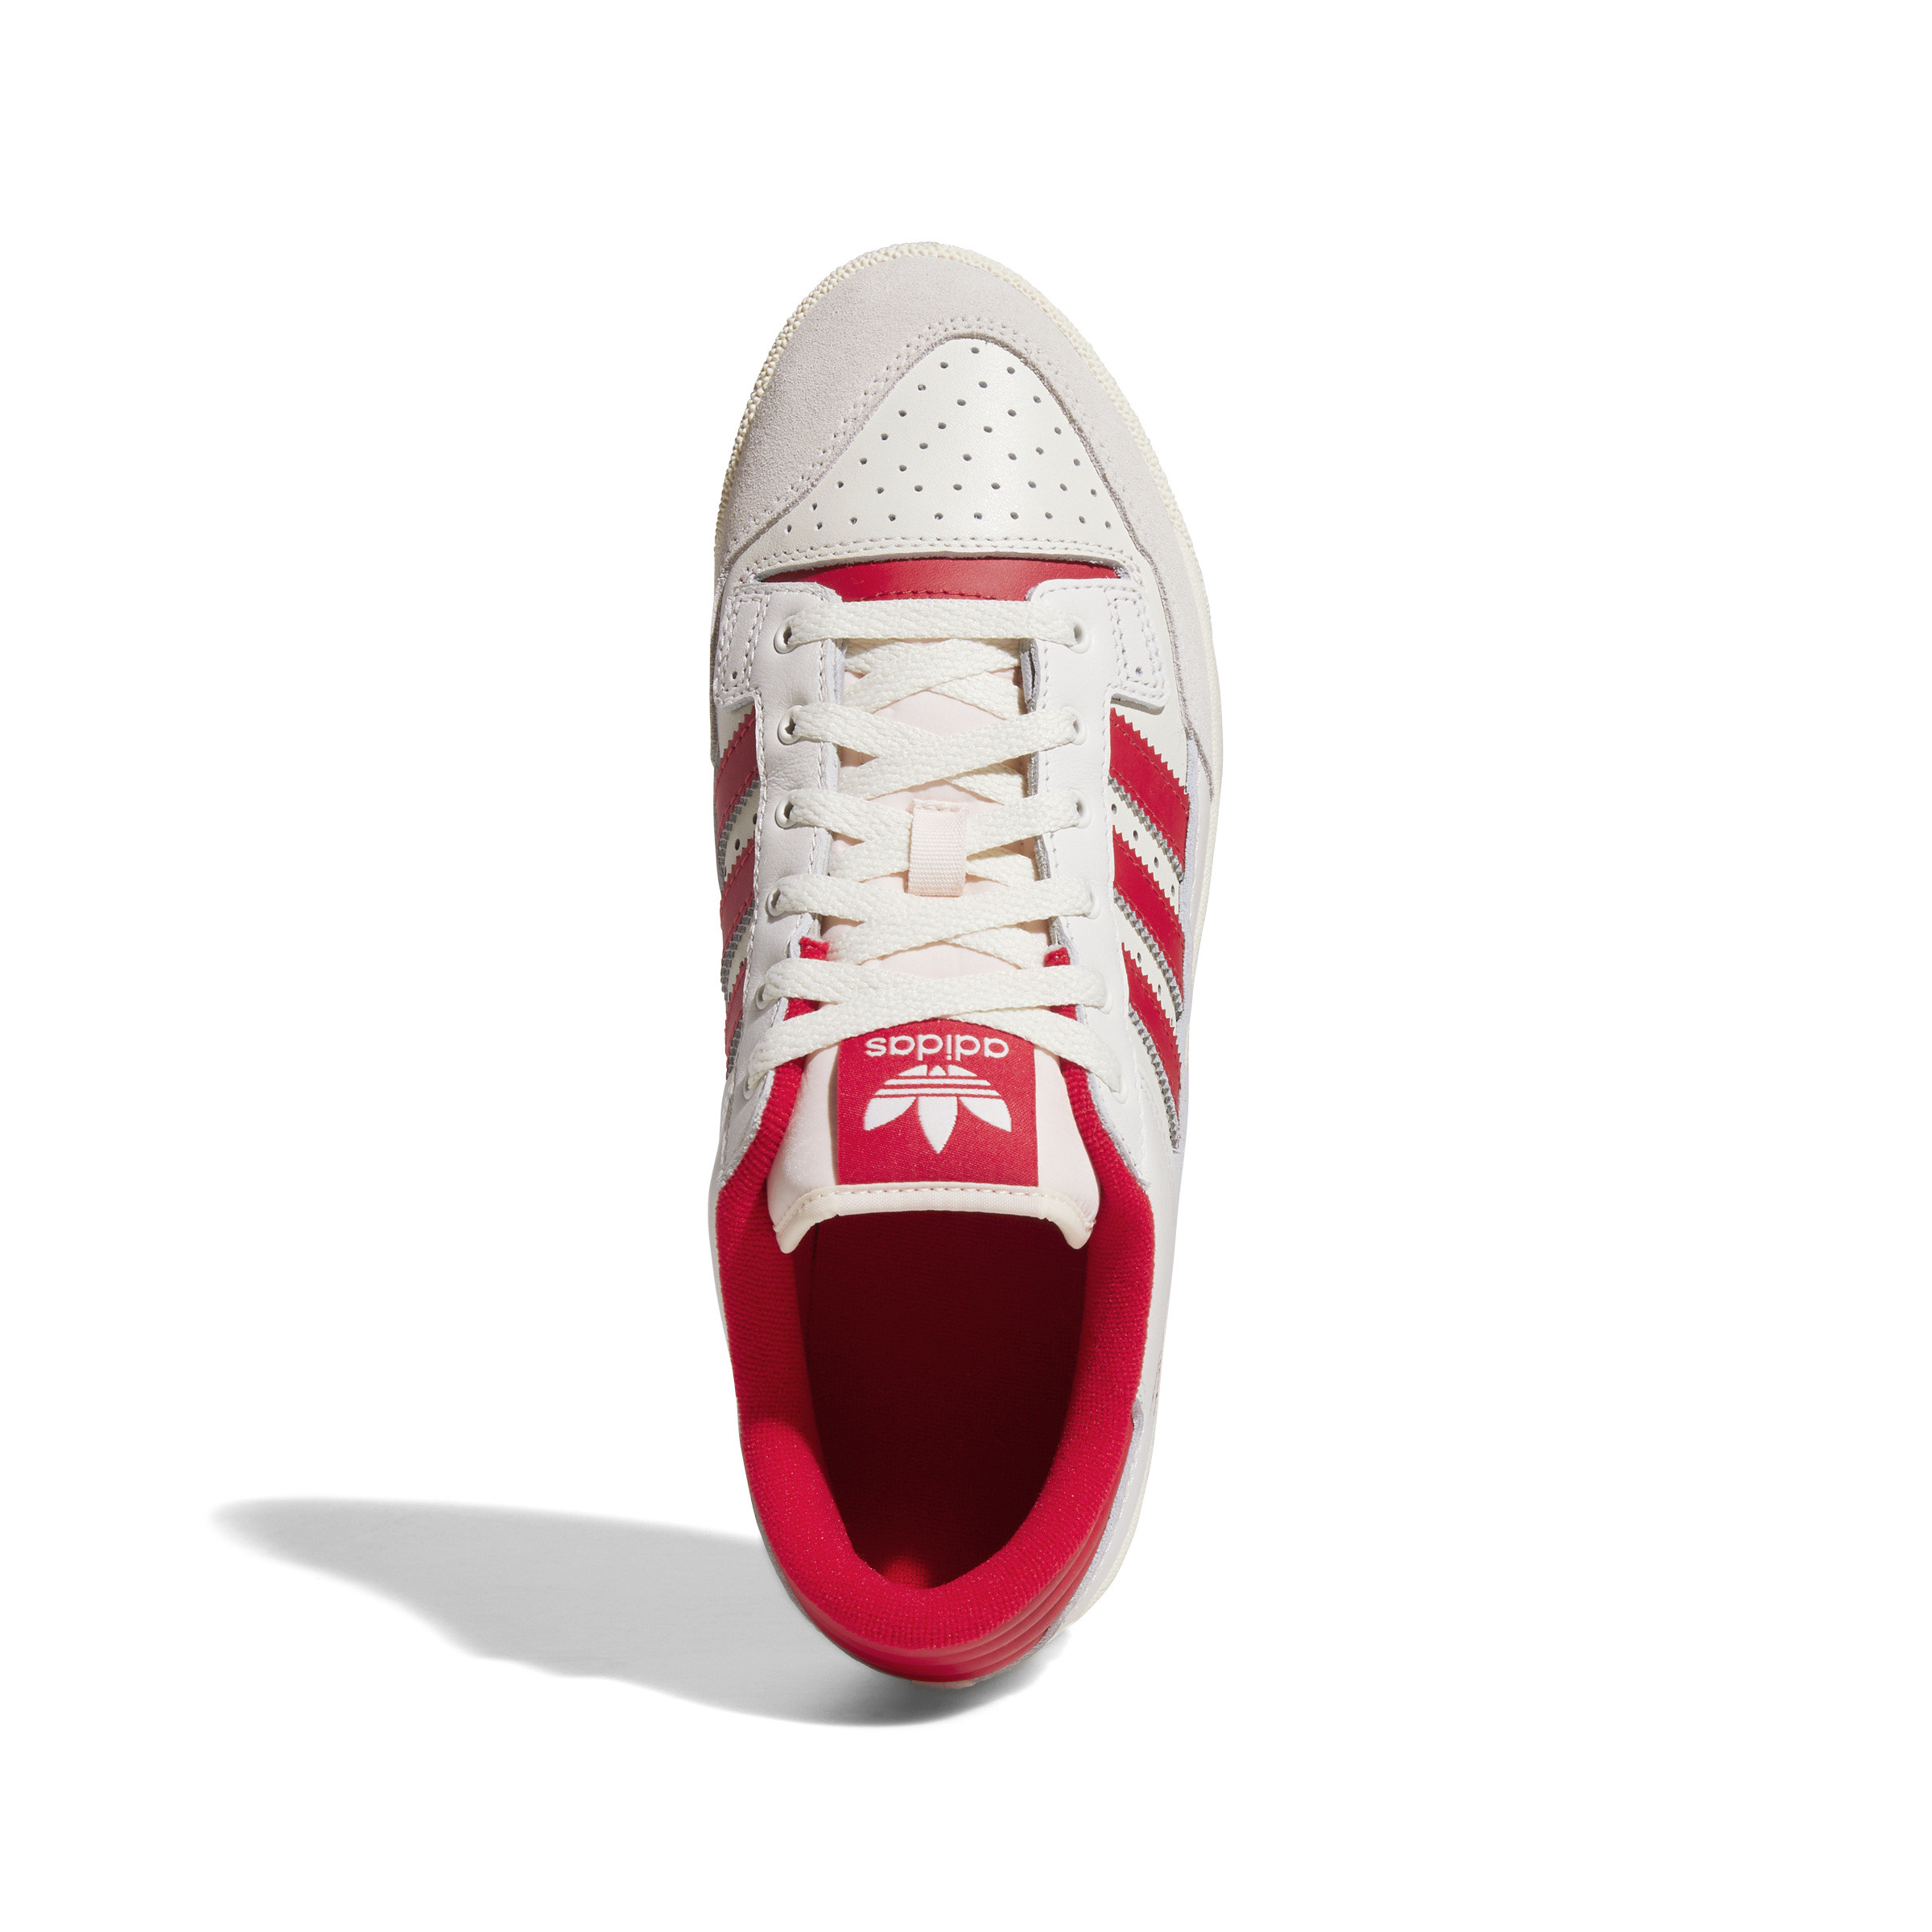 Adidas - Scarpe Centennial 85 low, Bianco, large image number 2